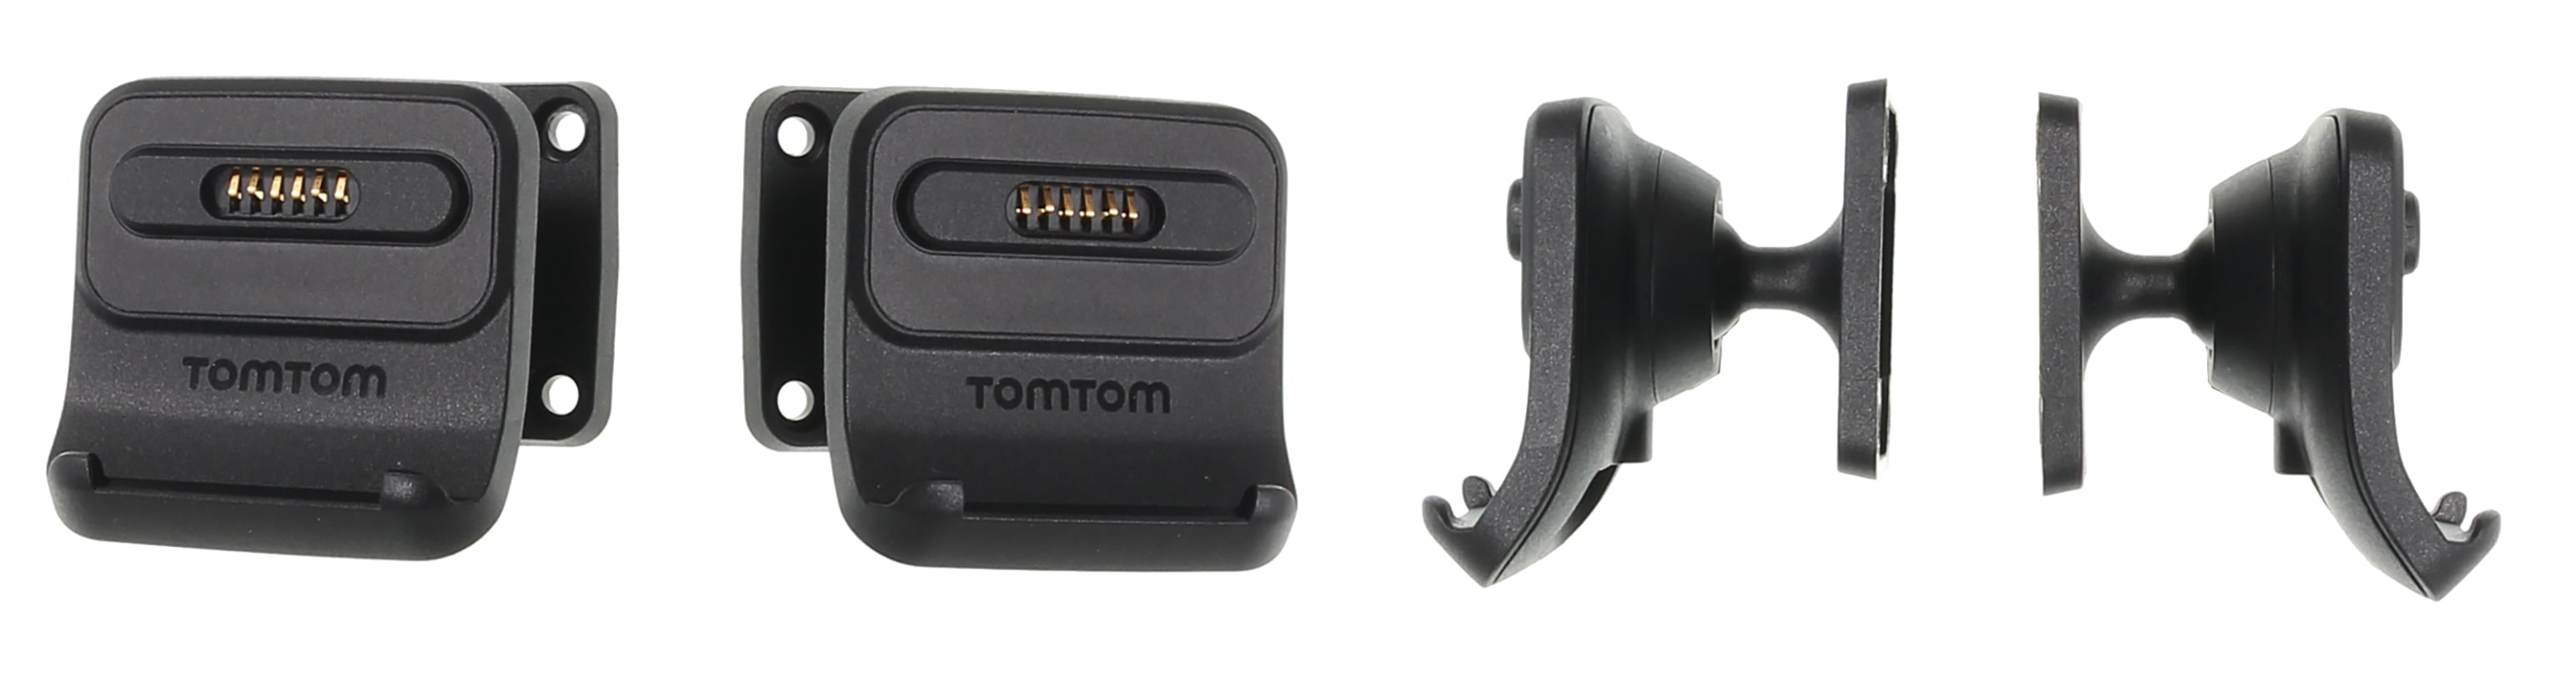 Active Dock Holder with Tilt Swivel for TomTom GO Professional 620